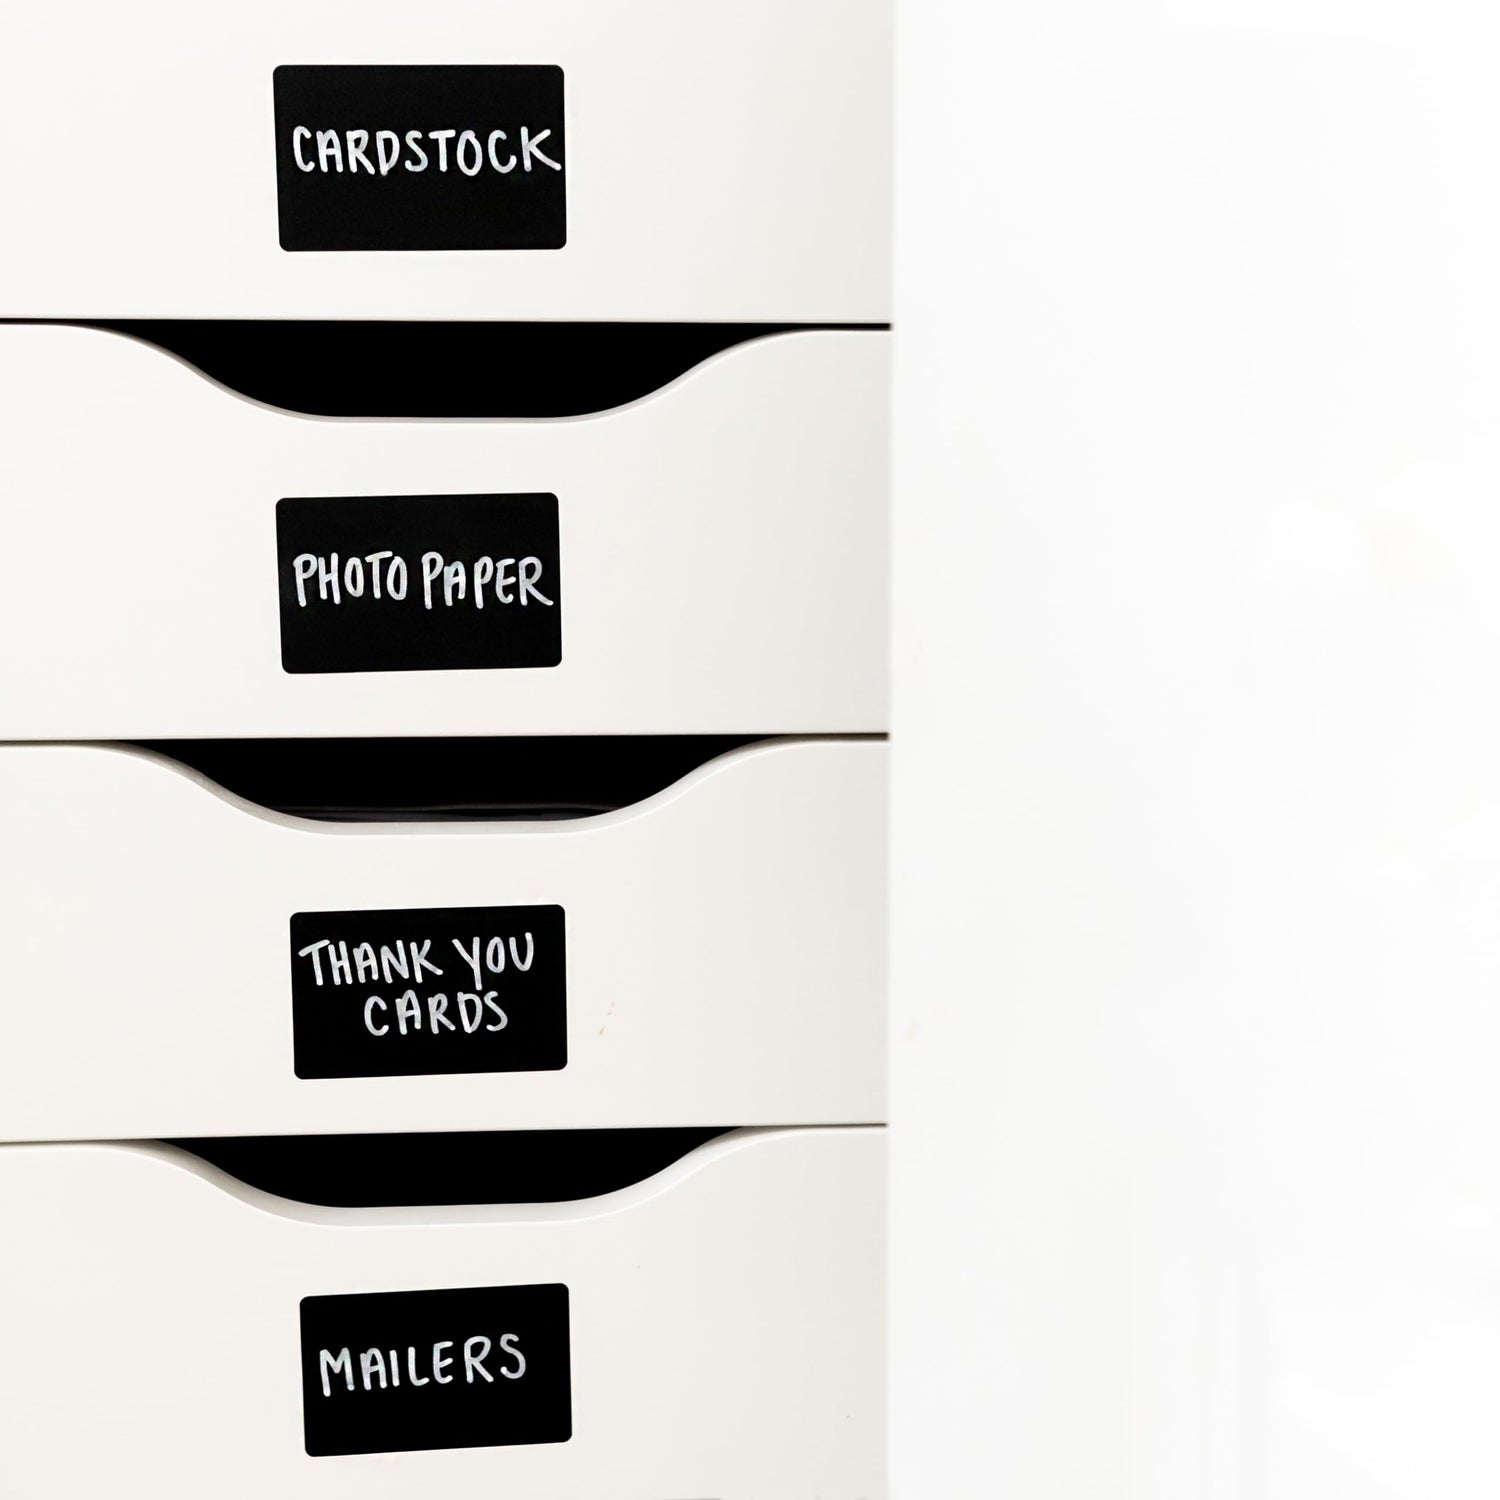 200 Chalkboard Labels for Jars